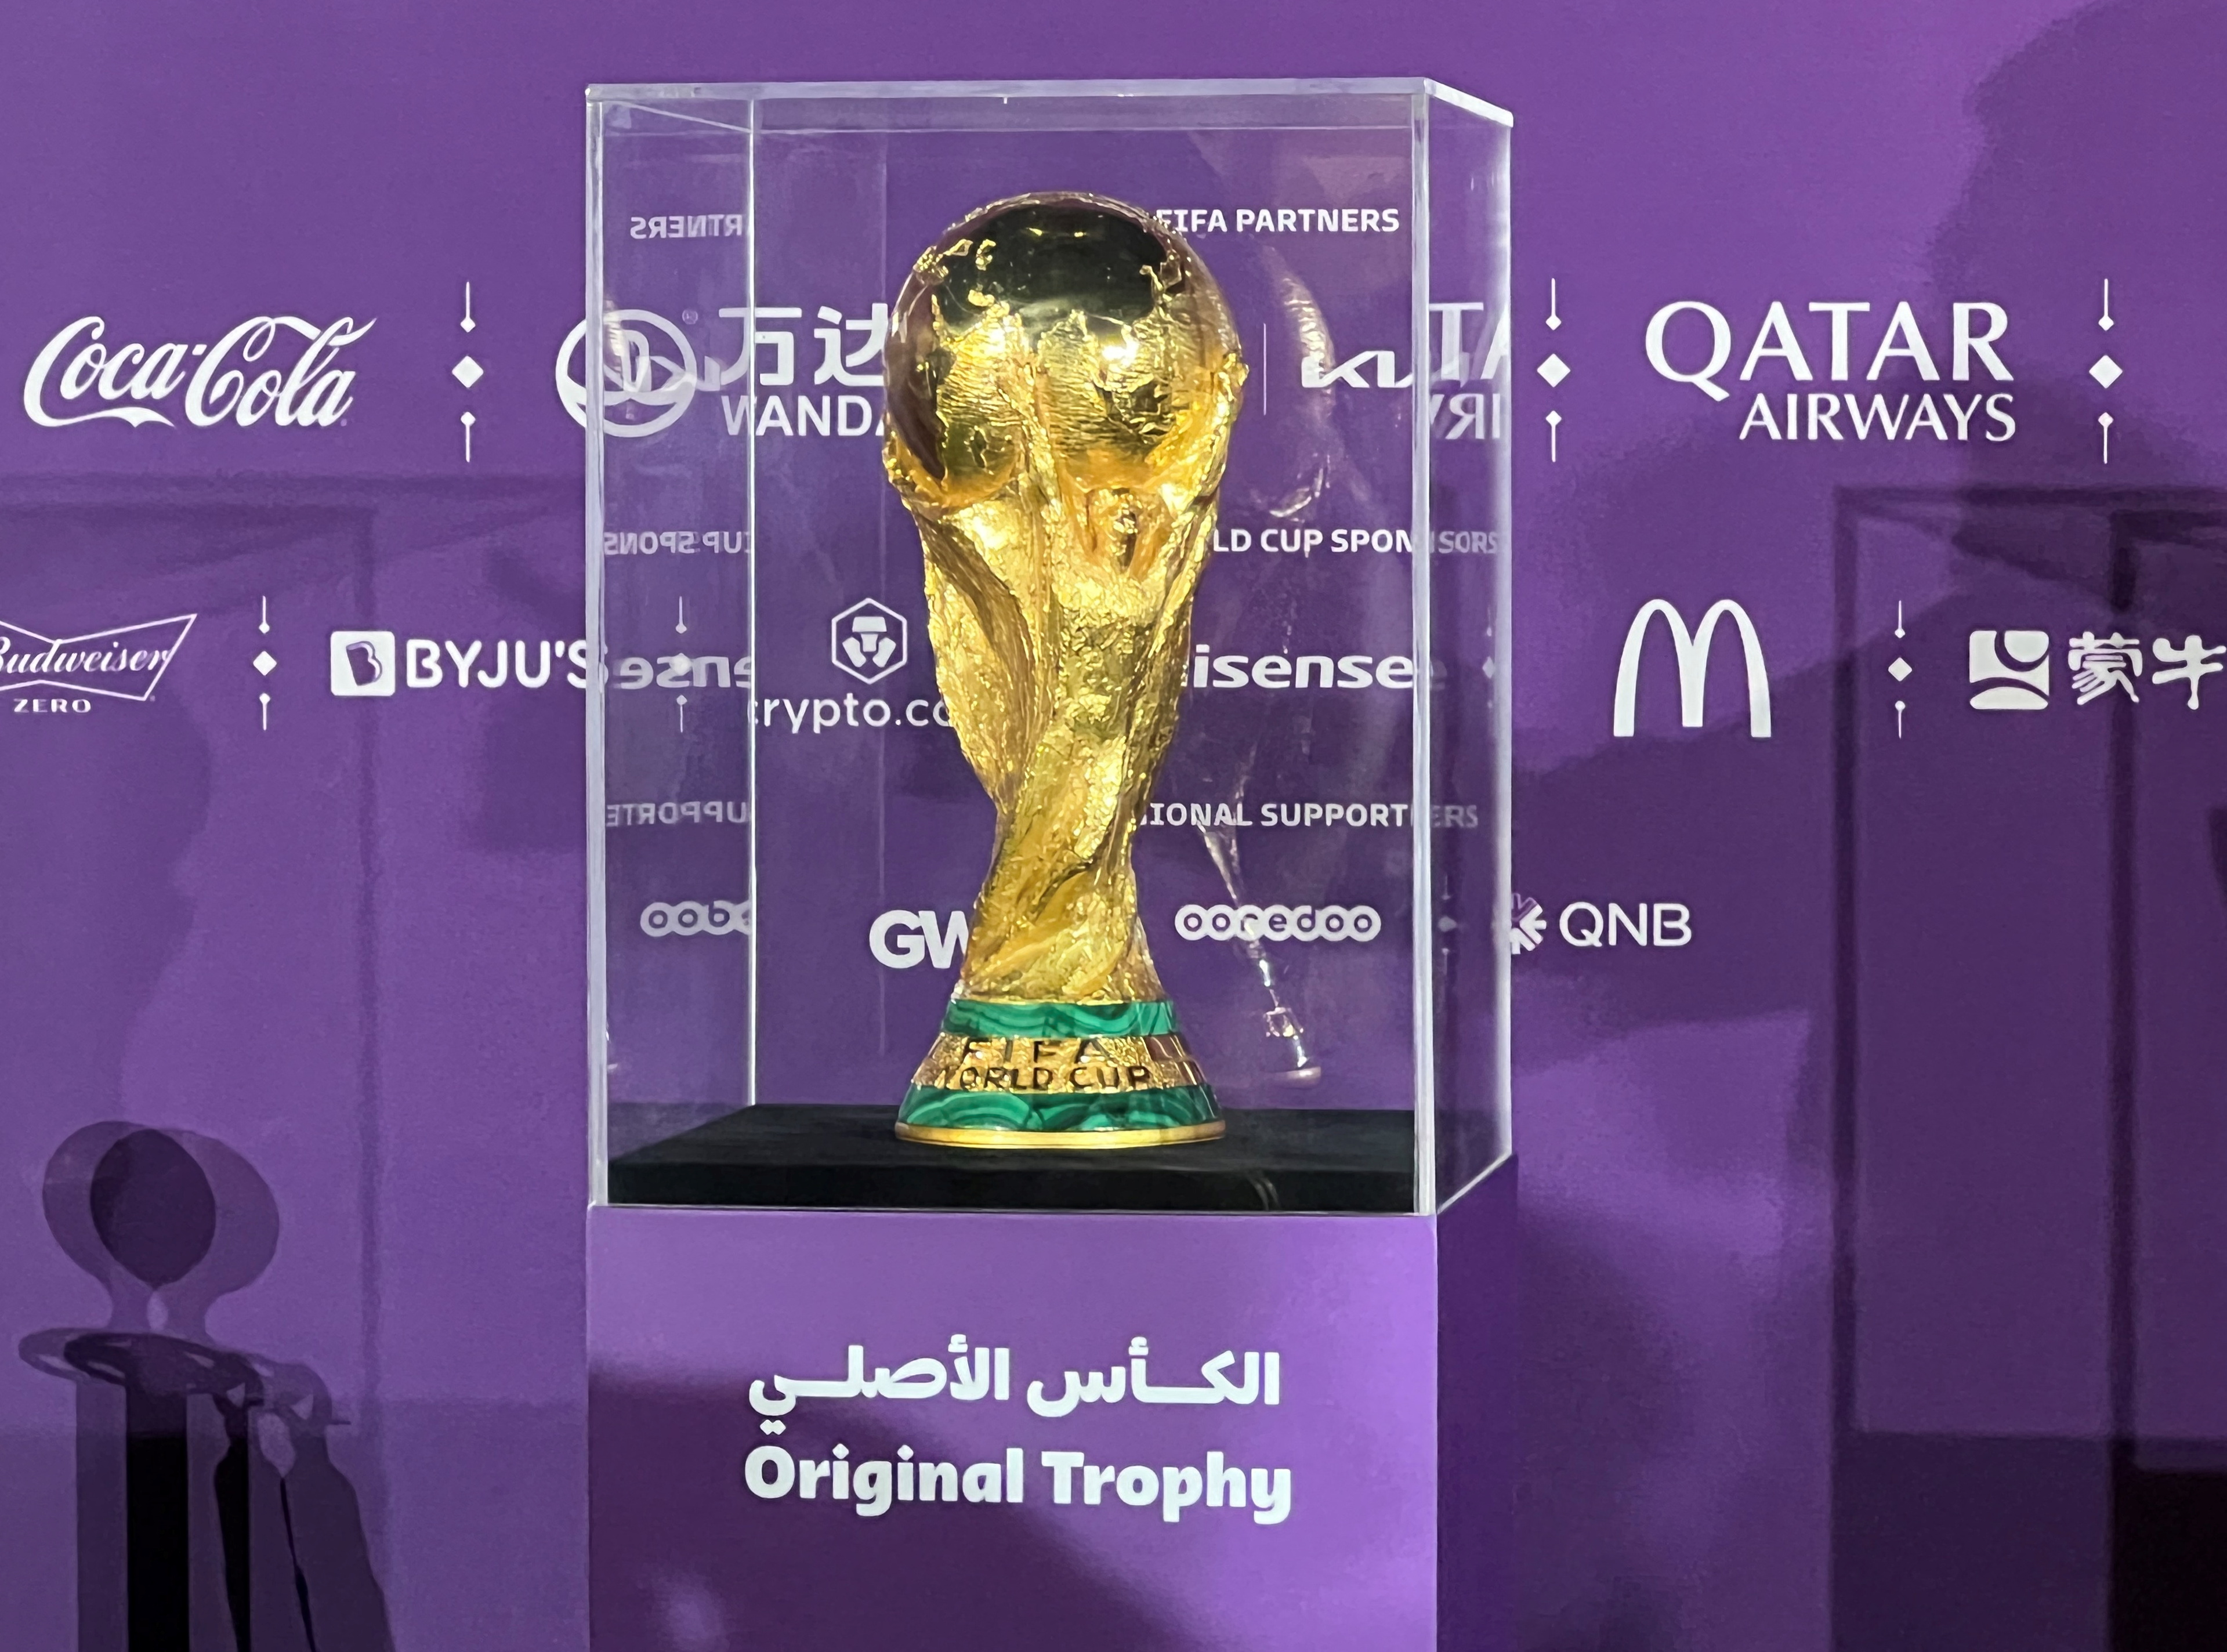 FIFA anunció una nueva fase de ventas de entradas para el Mundial de Qatar 2022